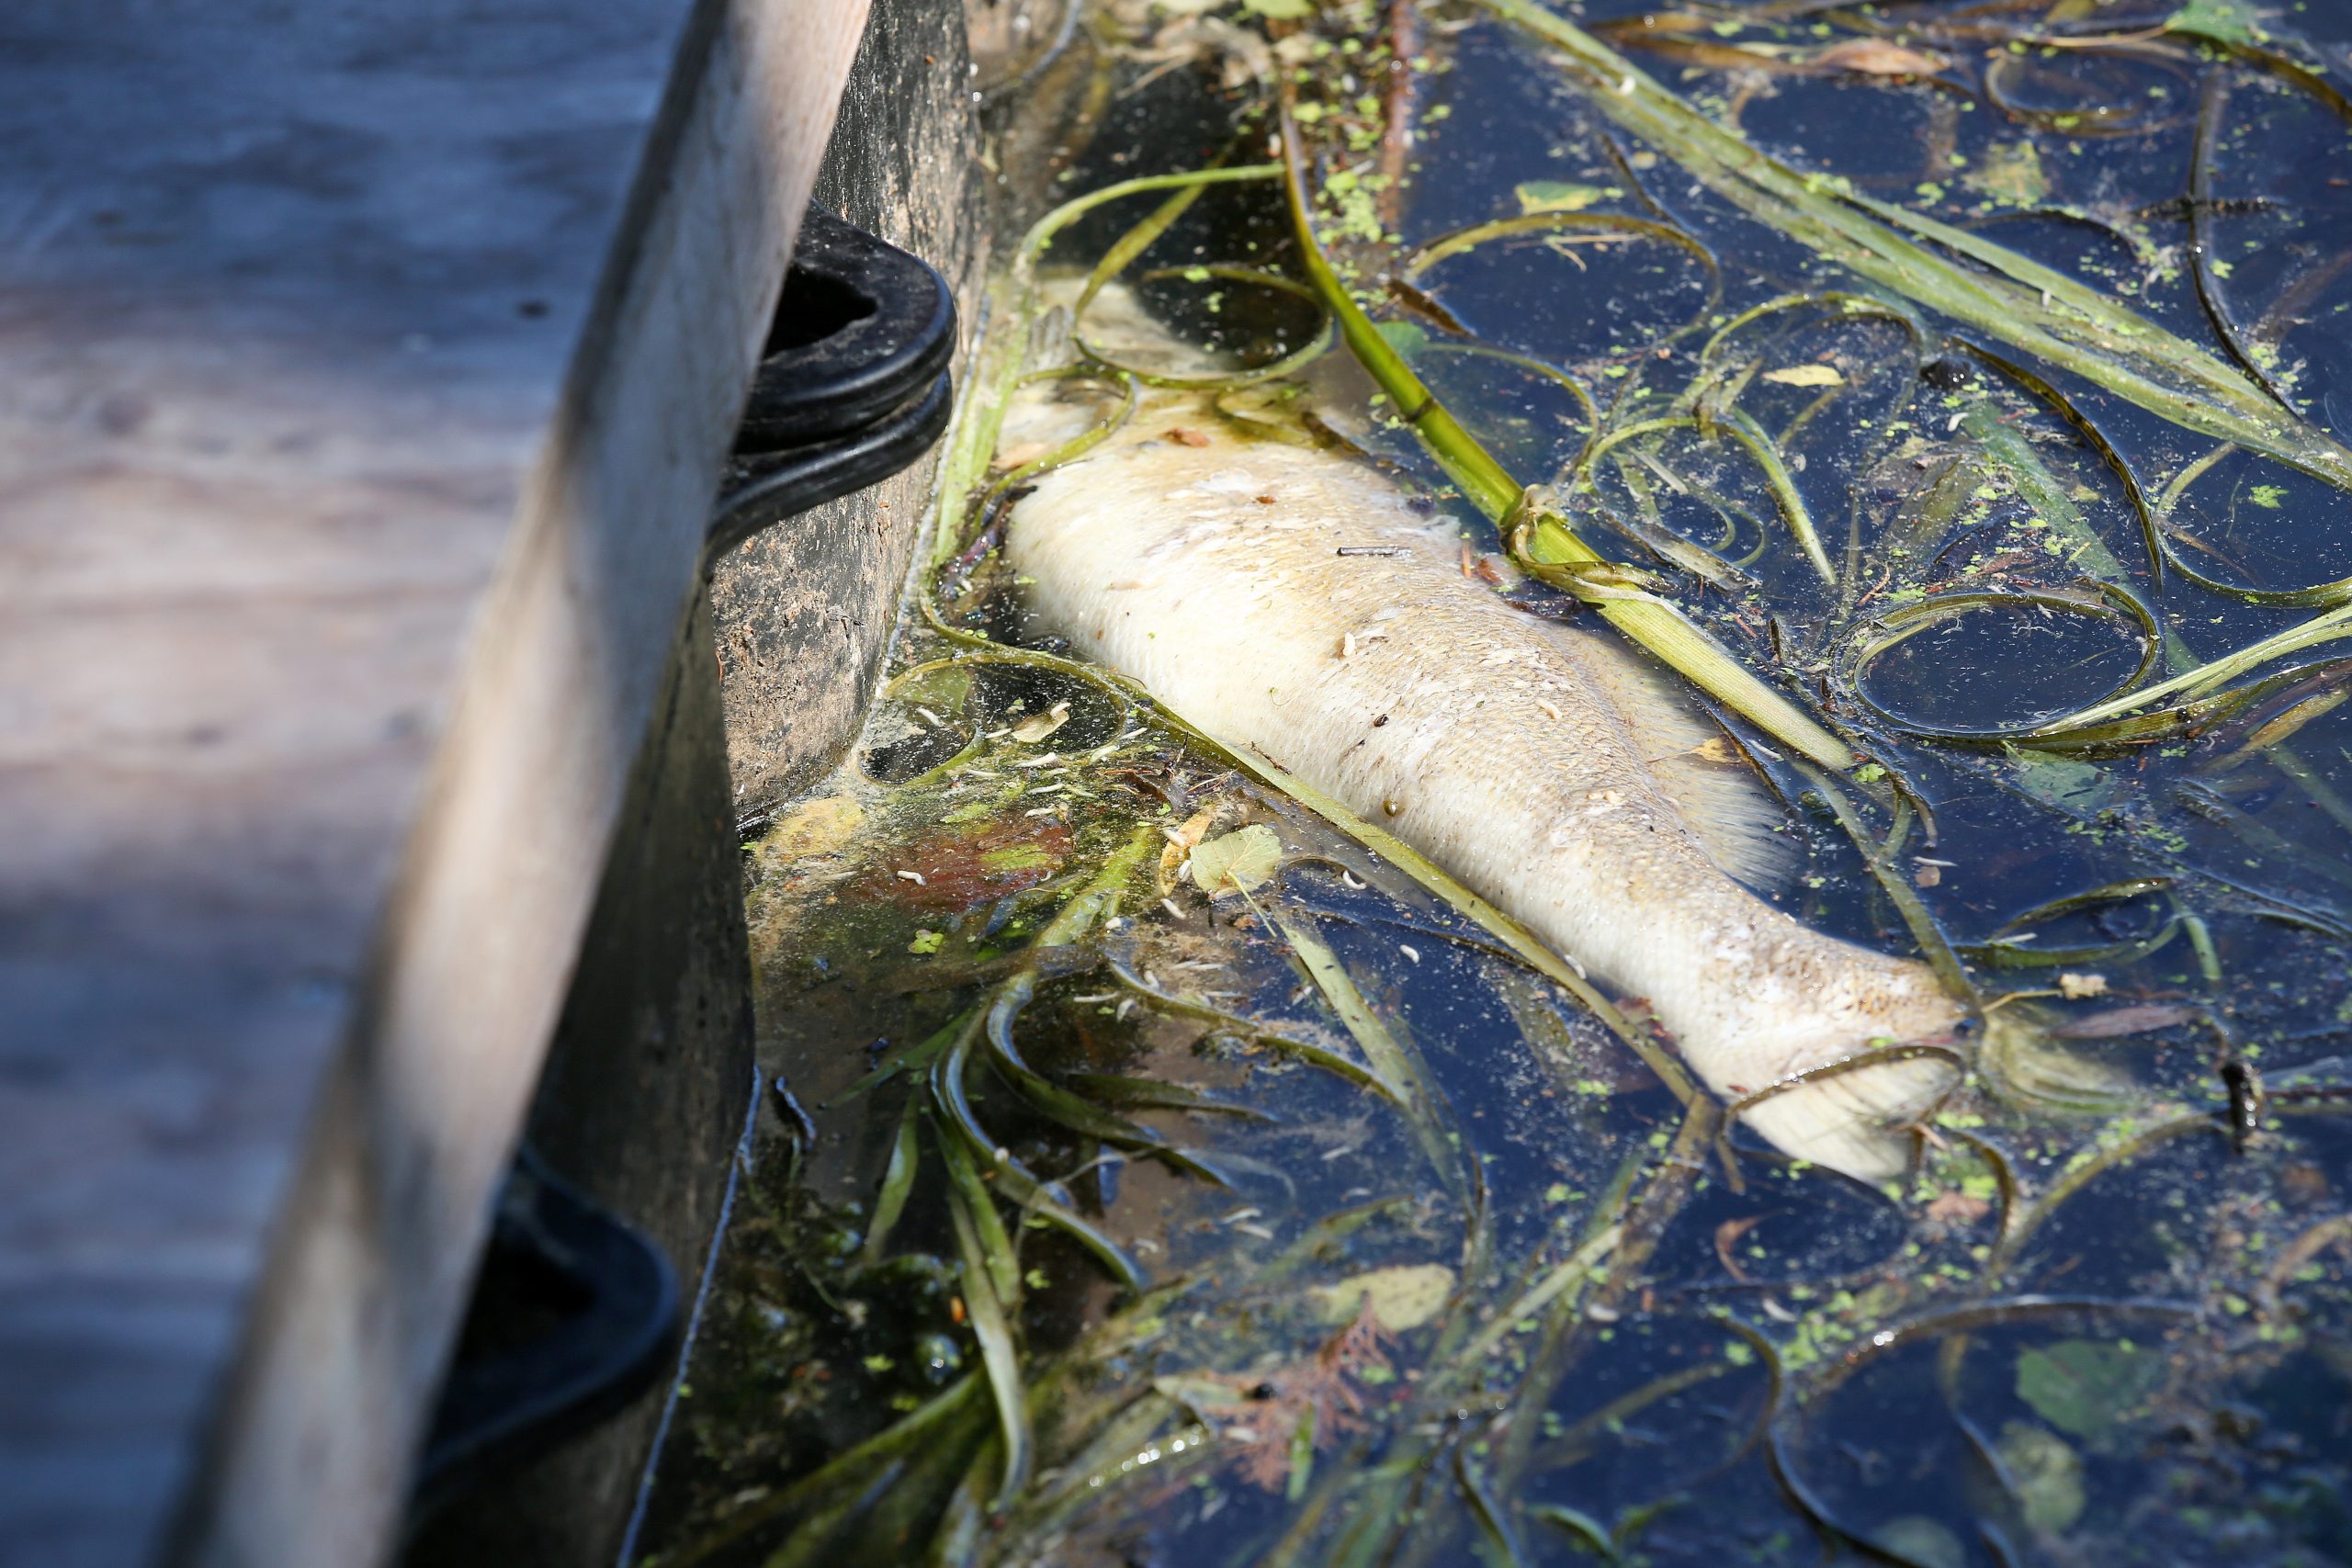 Umweltverbände schlagen Alarm: Aufgrund von Sauerstoffmangel wurden die ersten toten Fische gemeldet. (Symbolbild)